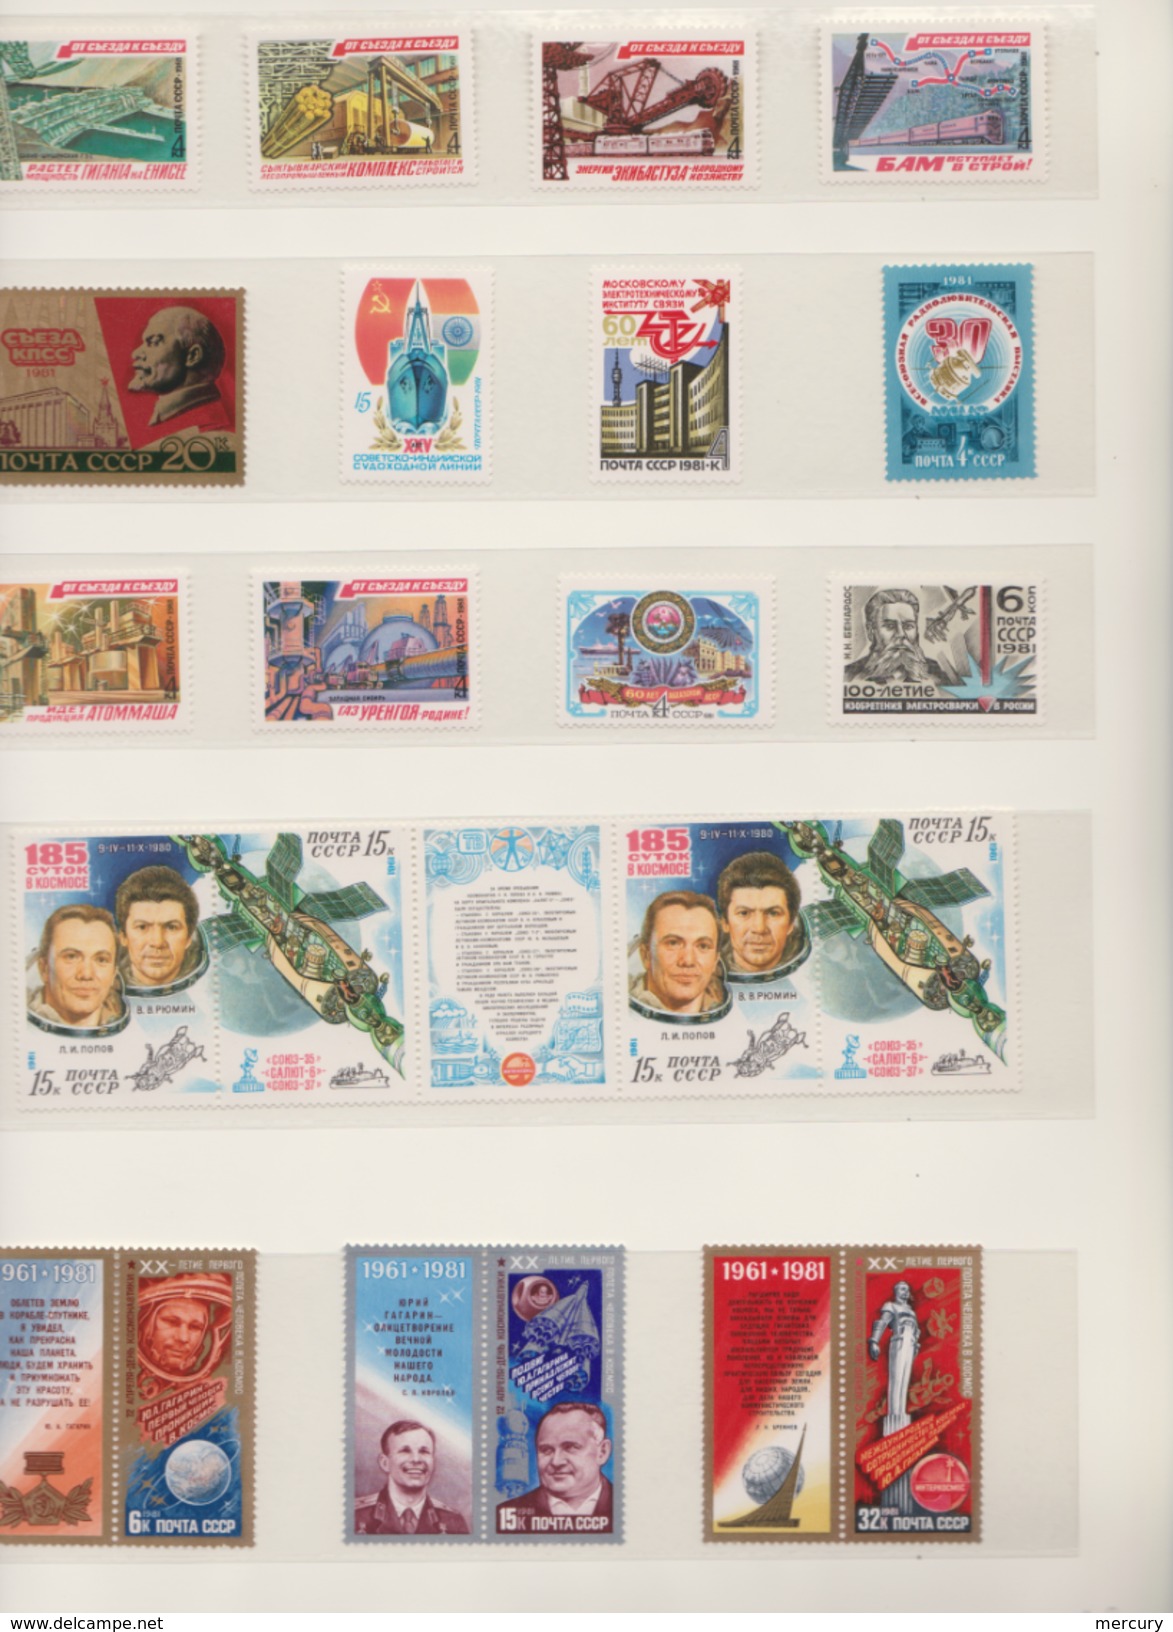 RUSSIE - Collection poste entre 1960 et 1992 - 99 scans